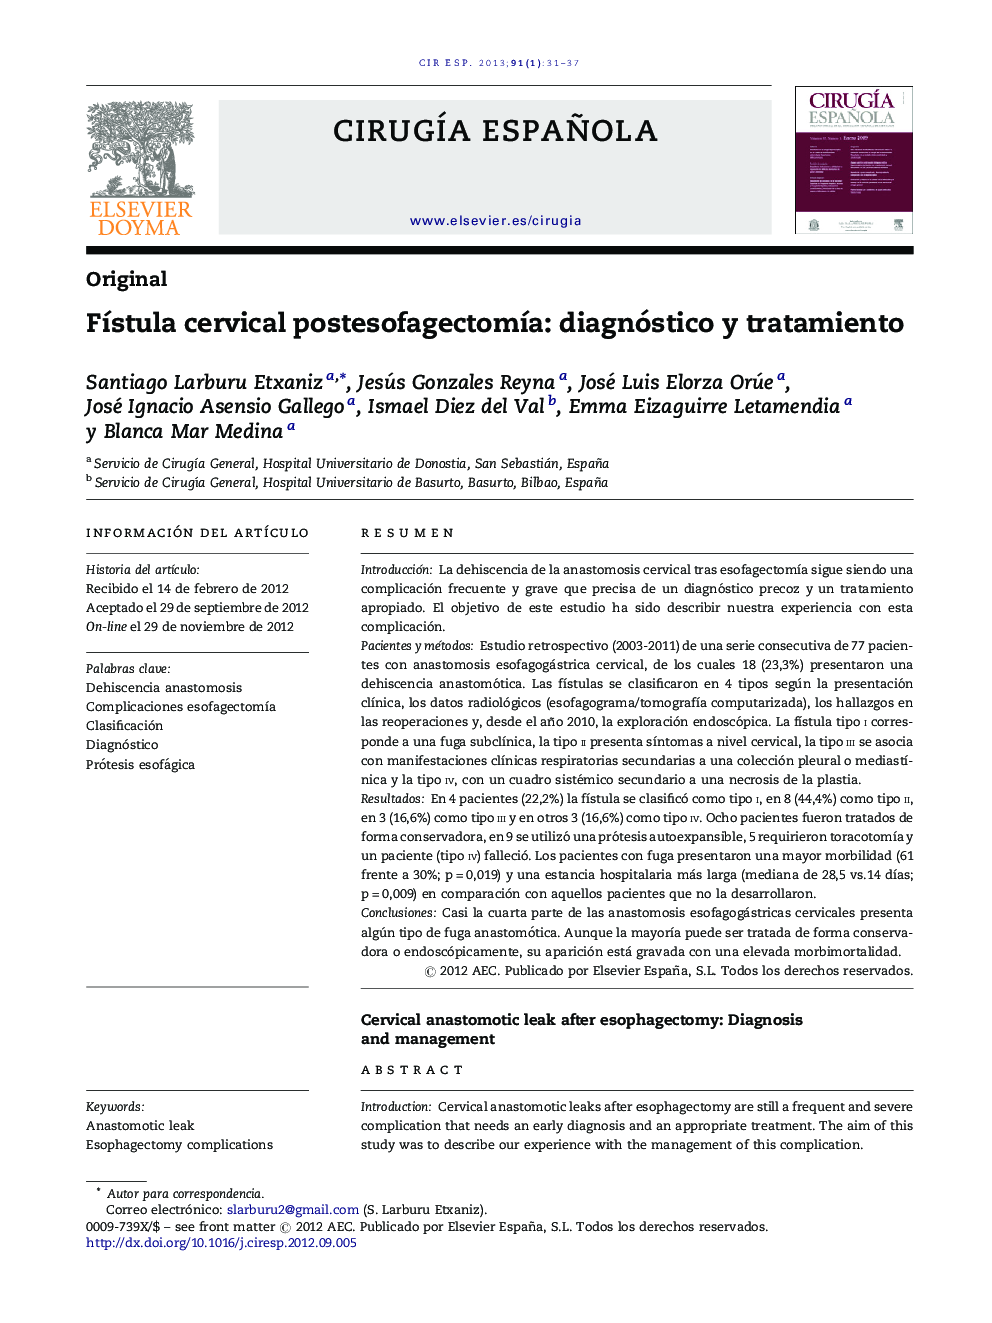 Fístula cervical postesofagectomía: diagnóstico y tratamiento